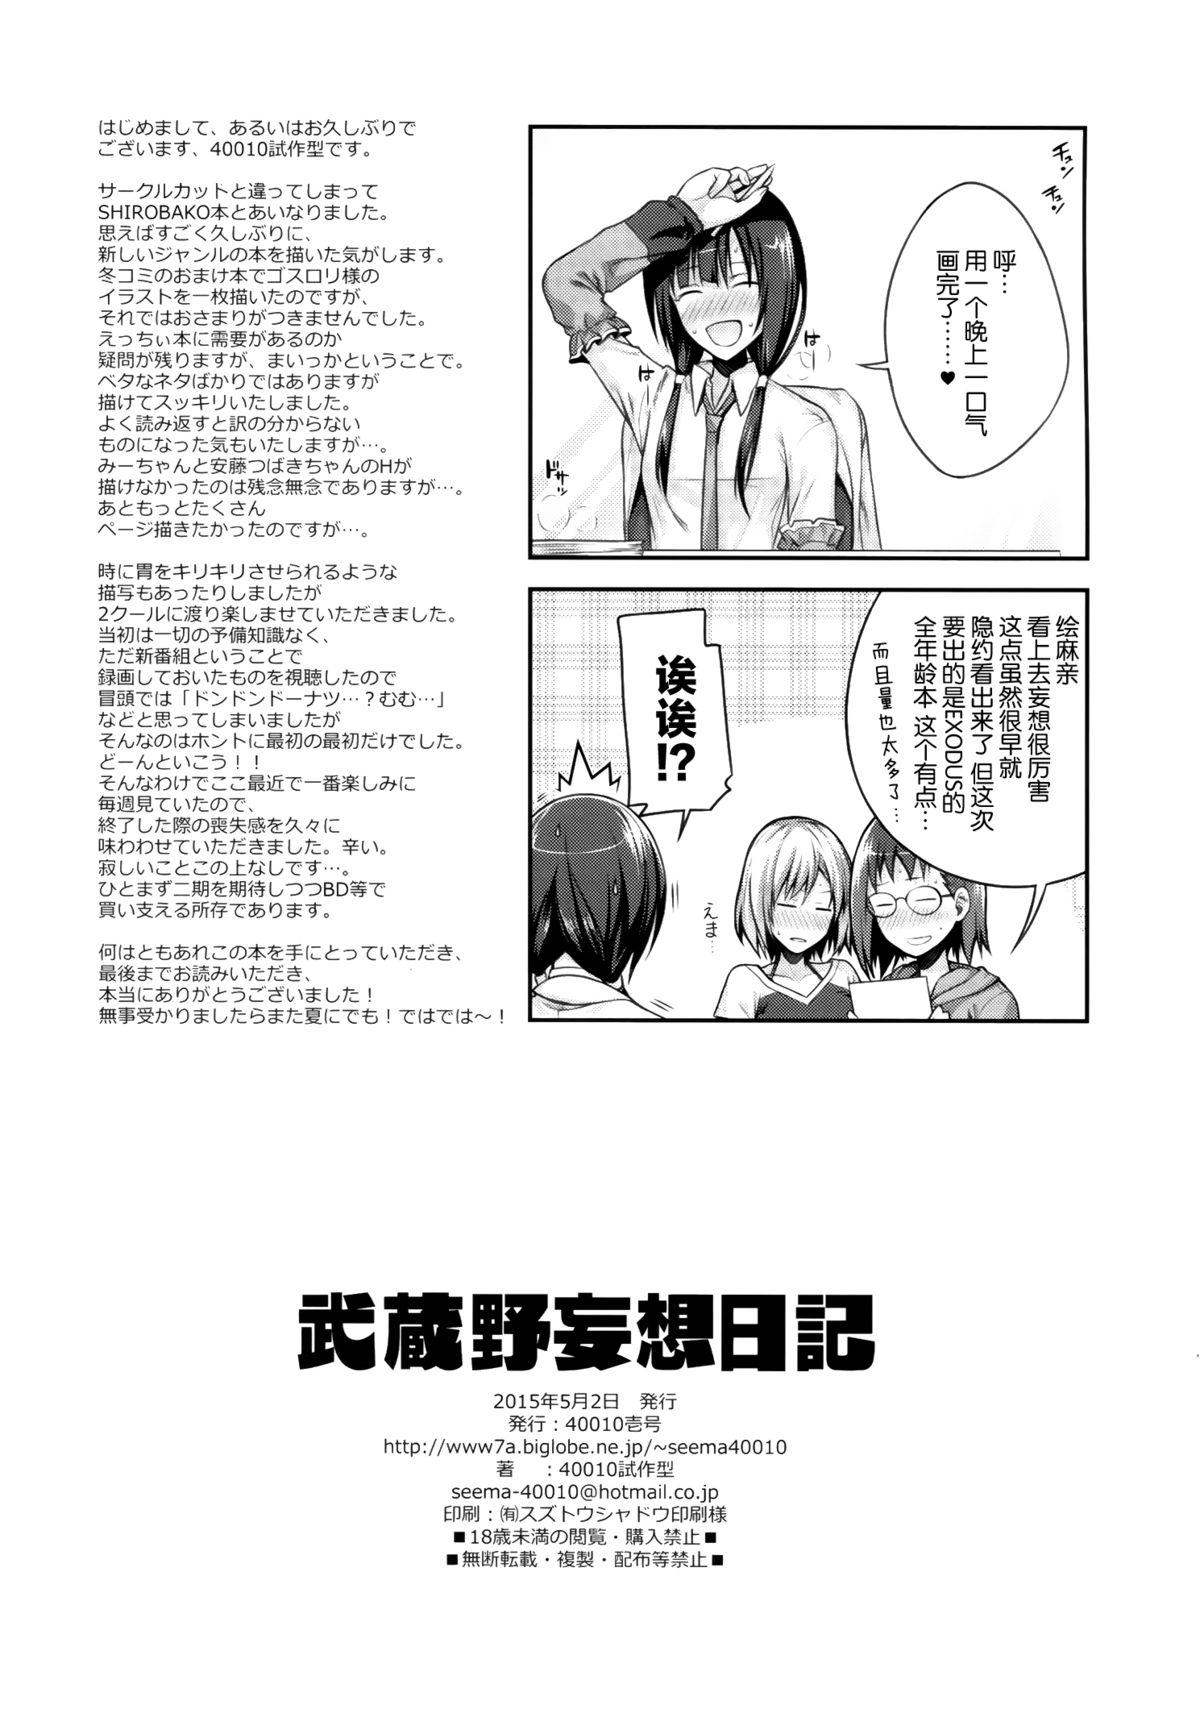 Curvy Musashino Mousou Nikki - Shirobako Naija - Page 22